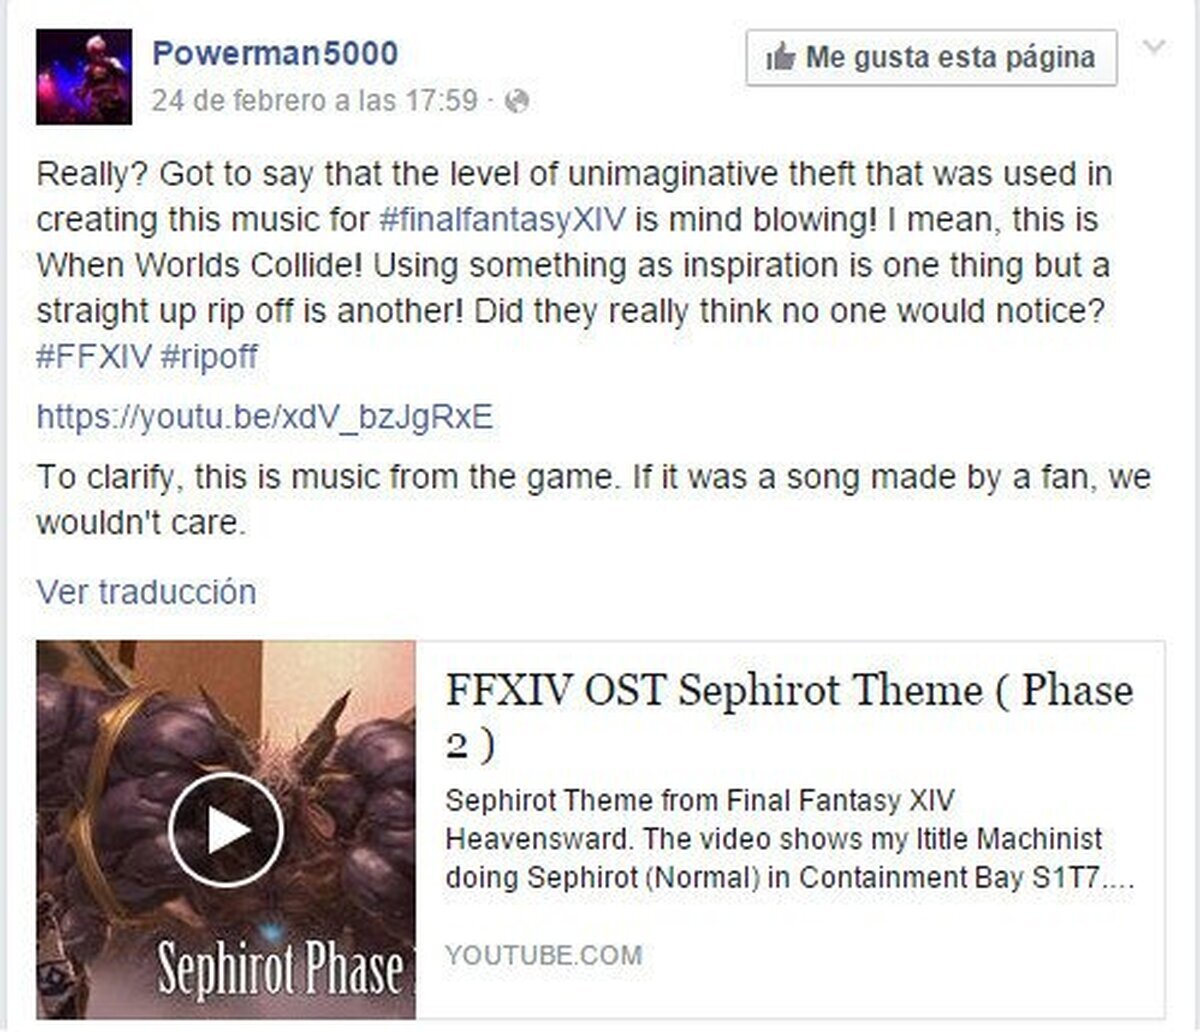 La banda Powerman 5000 afirma que Final Fantasy XIV les ha plagiado una canción